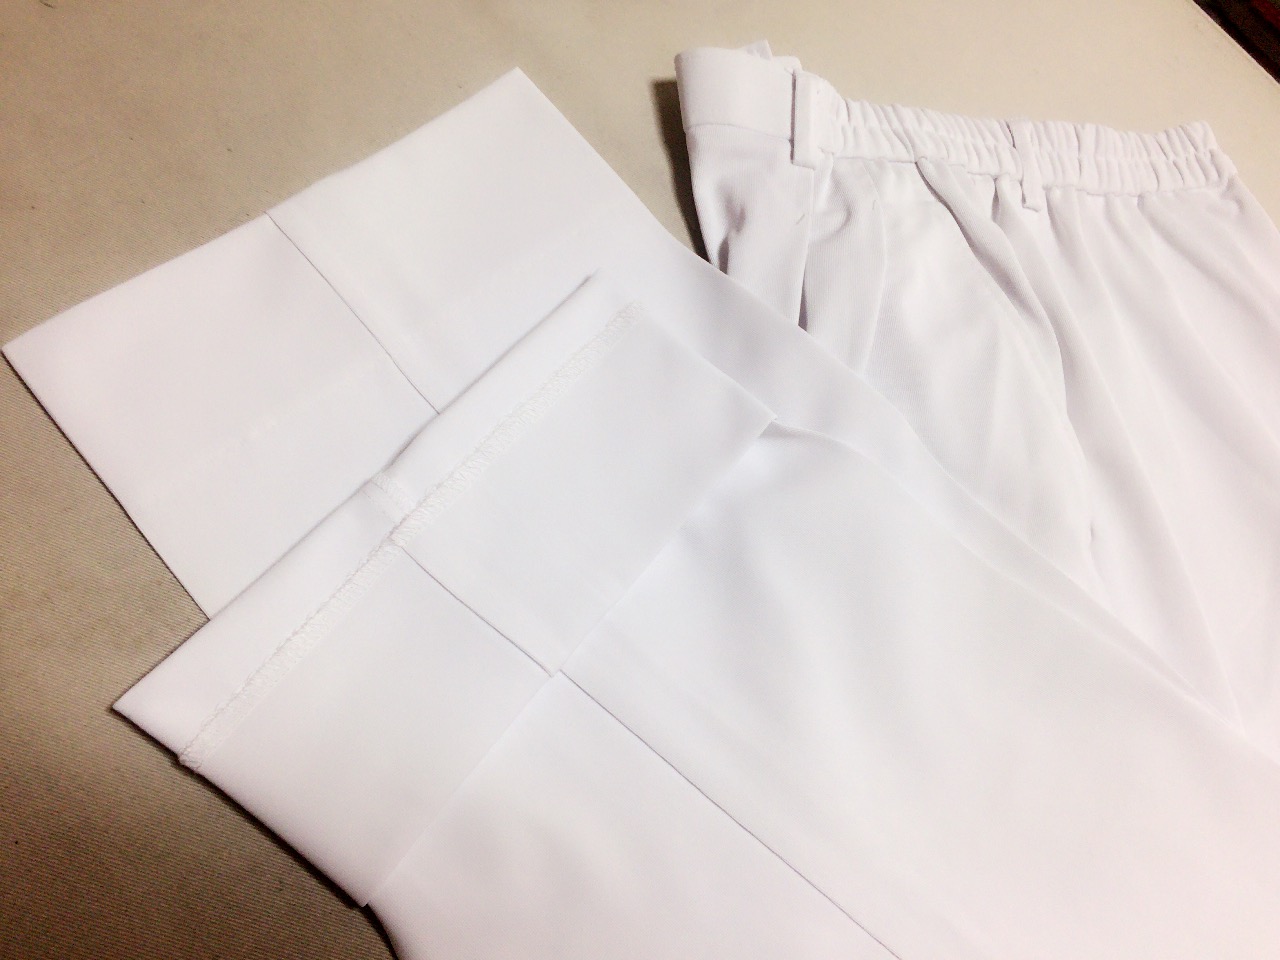 決定版 白衣ズボンを裾上げしたいなら 洋服直し事例などお直しコラム